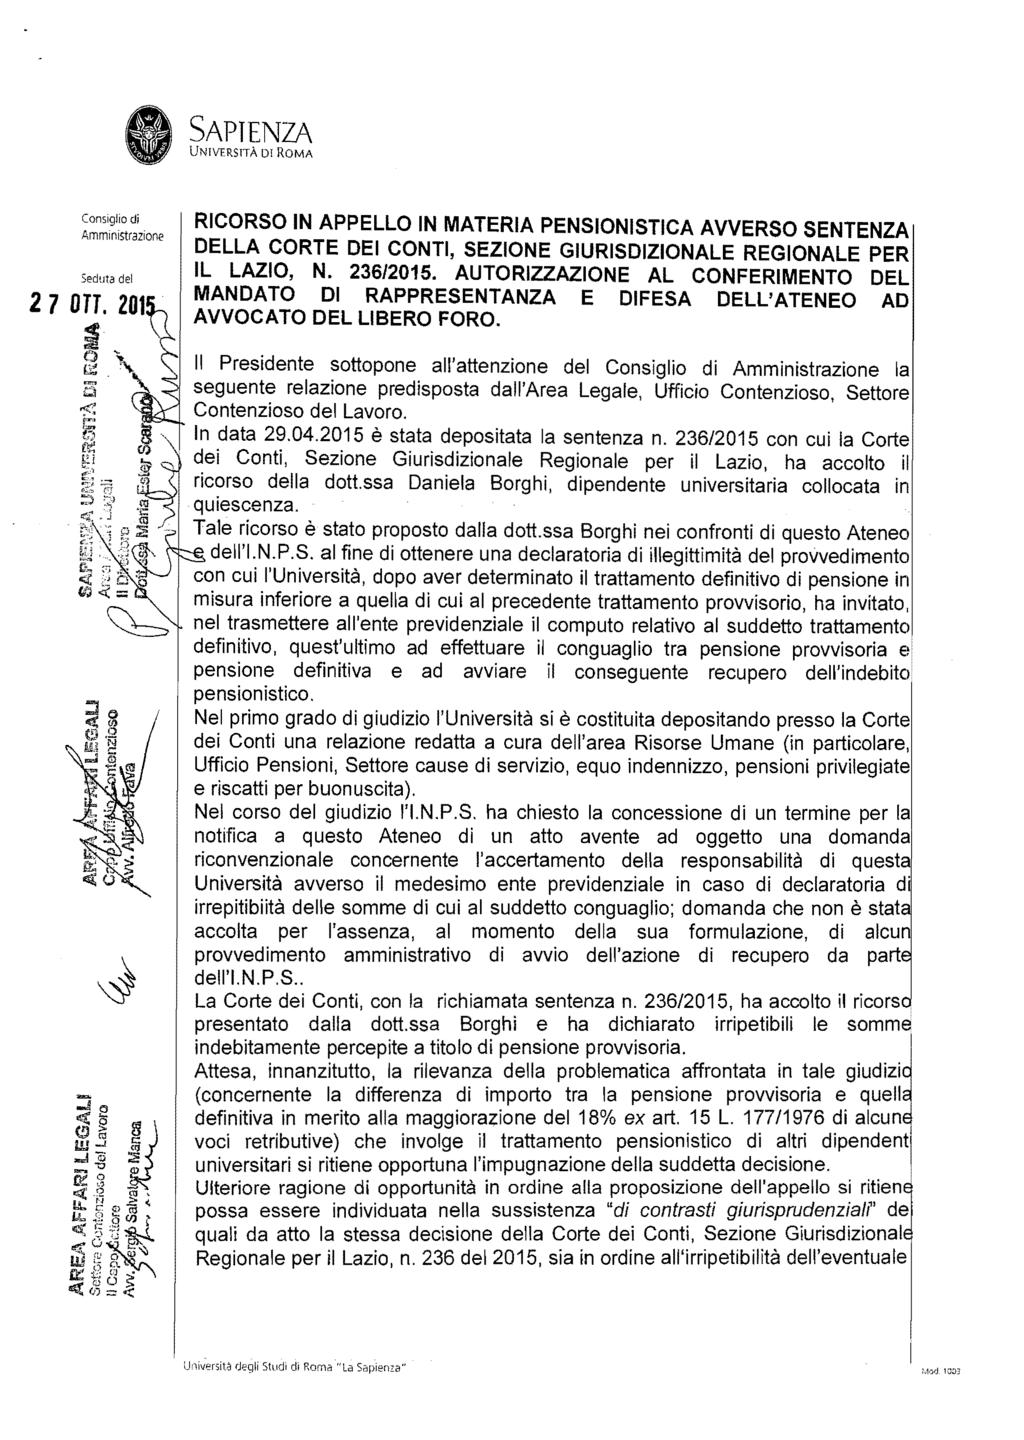 UNfVERSTTÀ Dr ROMA 27 OH. 201 ~ ~ O "t!ji;!. : RICORSO IN APPELLO IN MATERIA PENSIONISTICA AVVERSO SENTENZA DELLA CORTE DEI CONTI, SEZIONE GIURISDIZIONALE REGIONALE PER IL LAZIO, N. 236/2015.